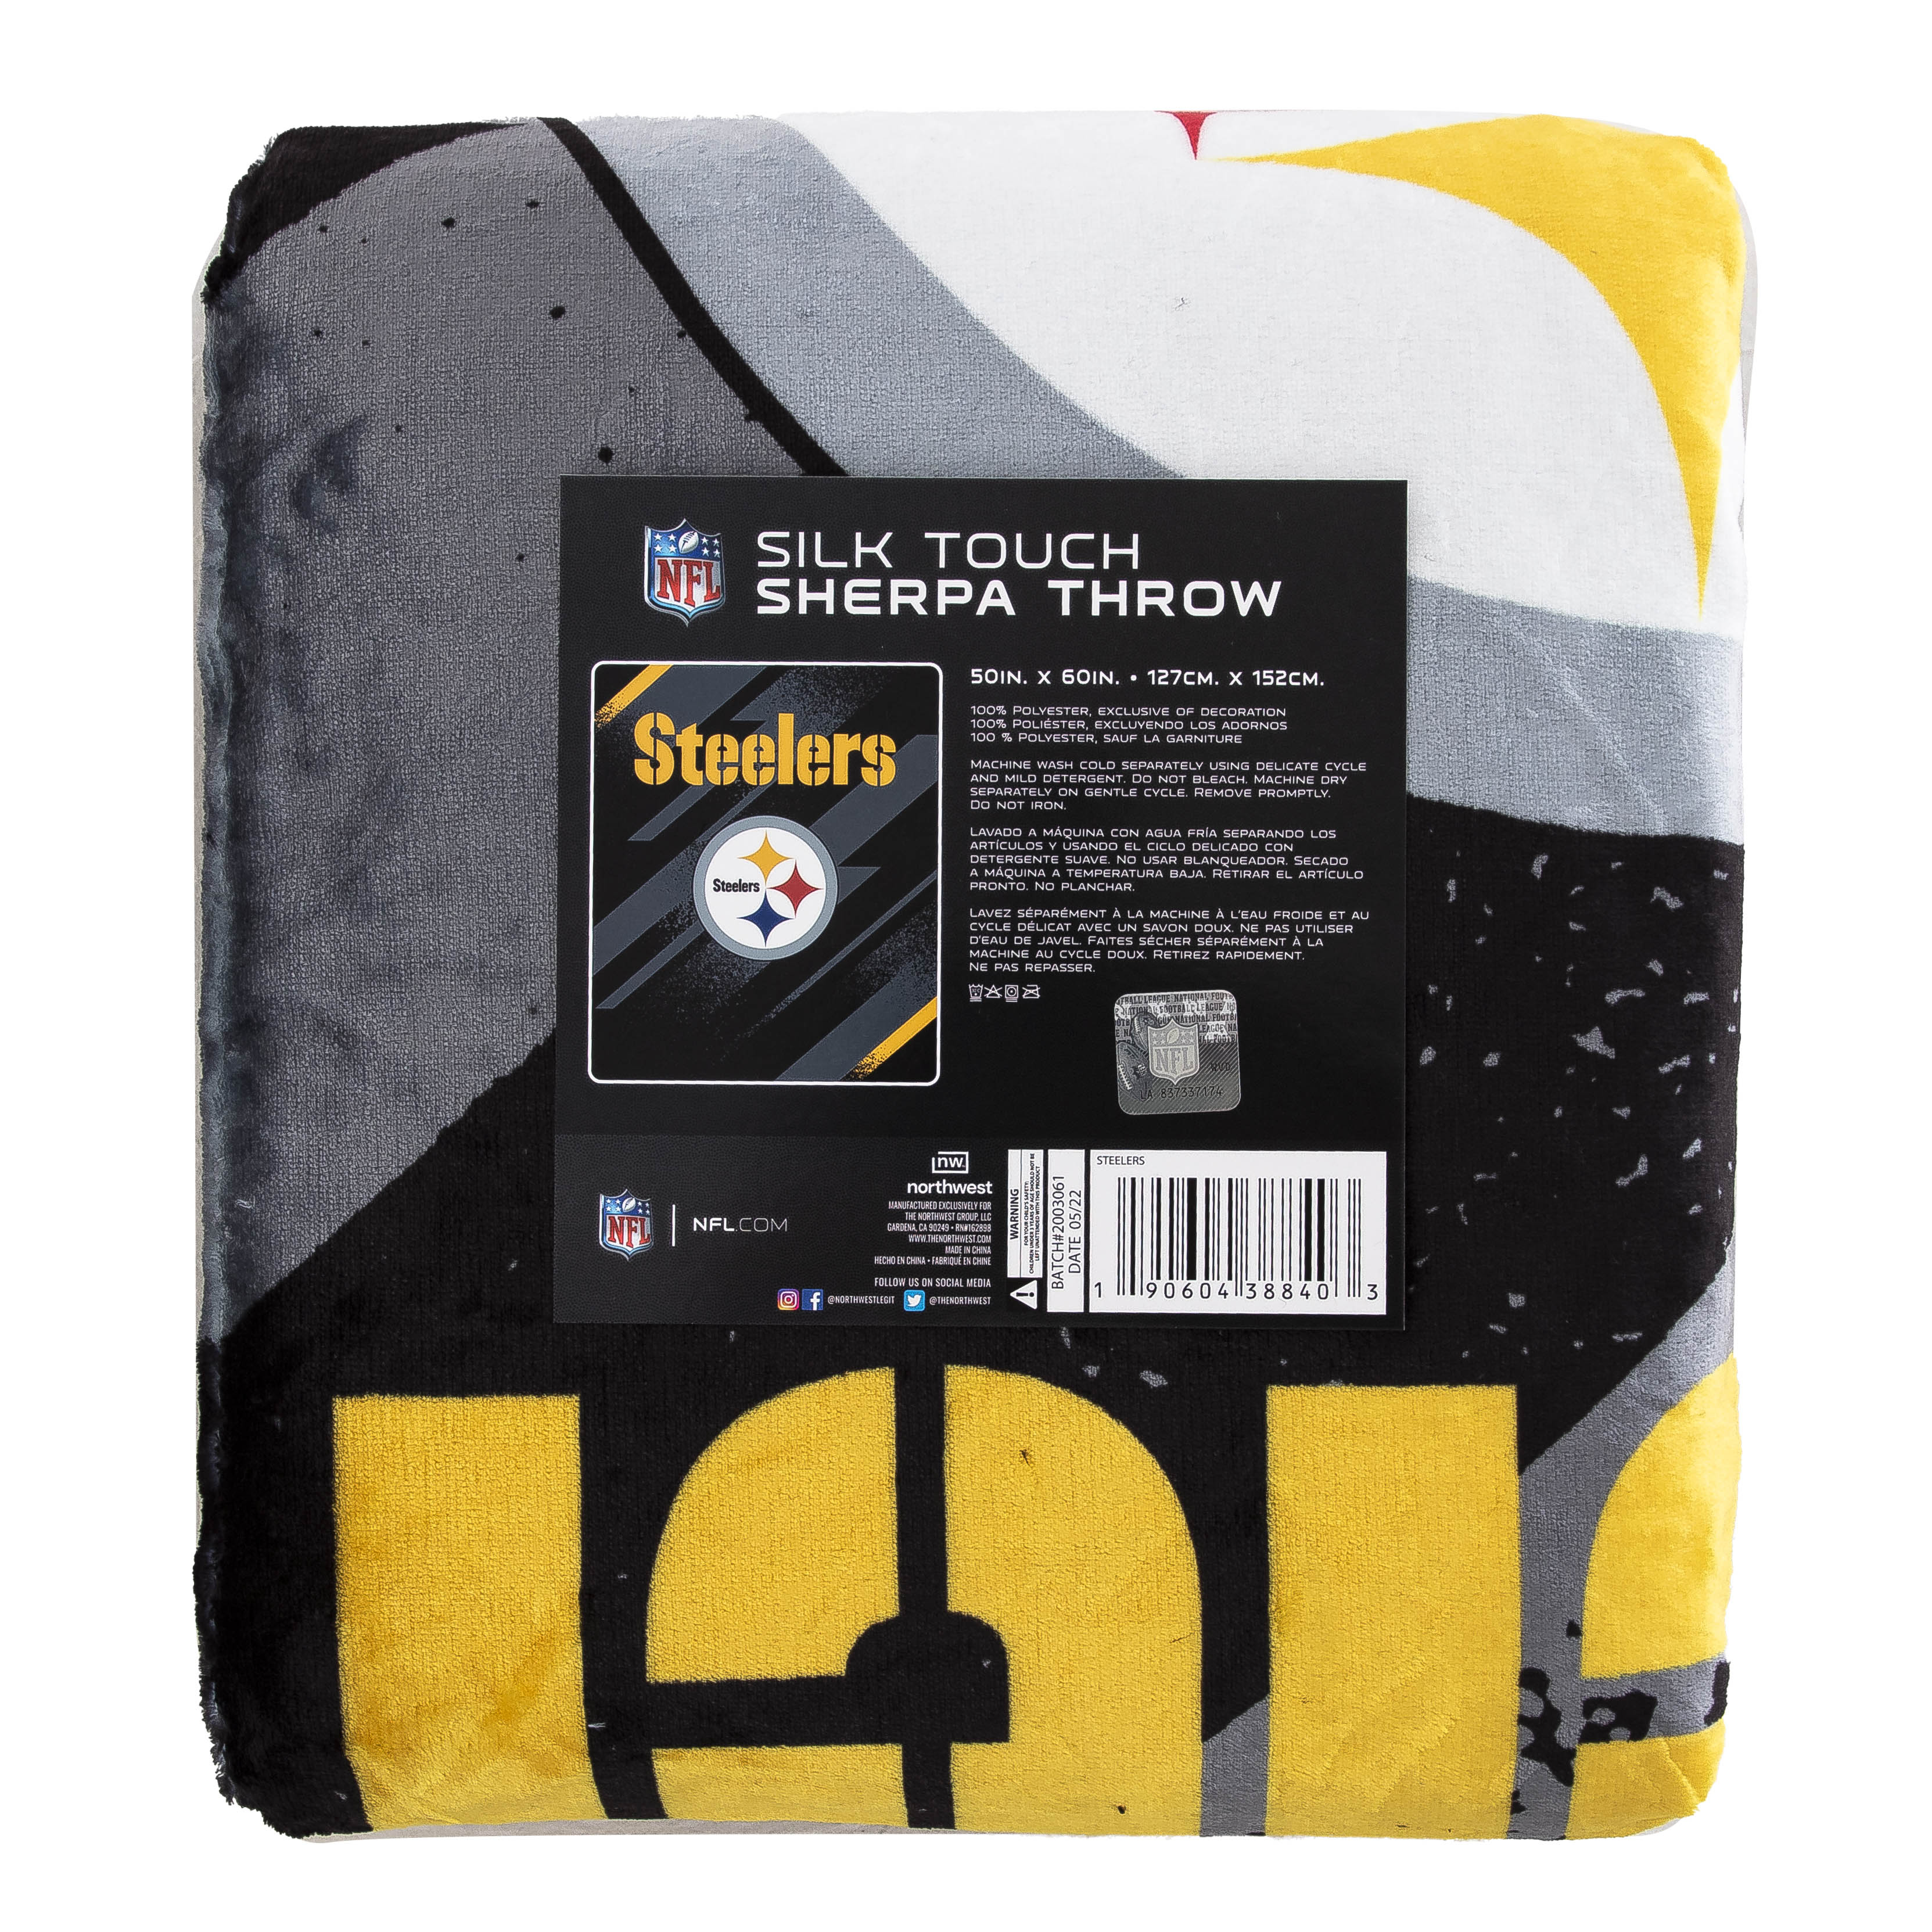  Northwest NBA Silk Touch Sherpa Throw Blanket 50 X 60